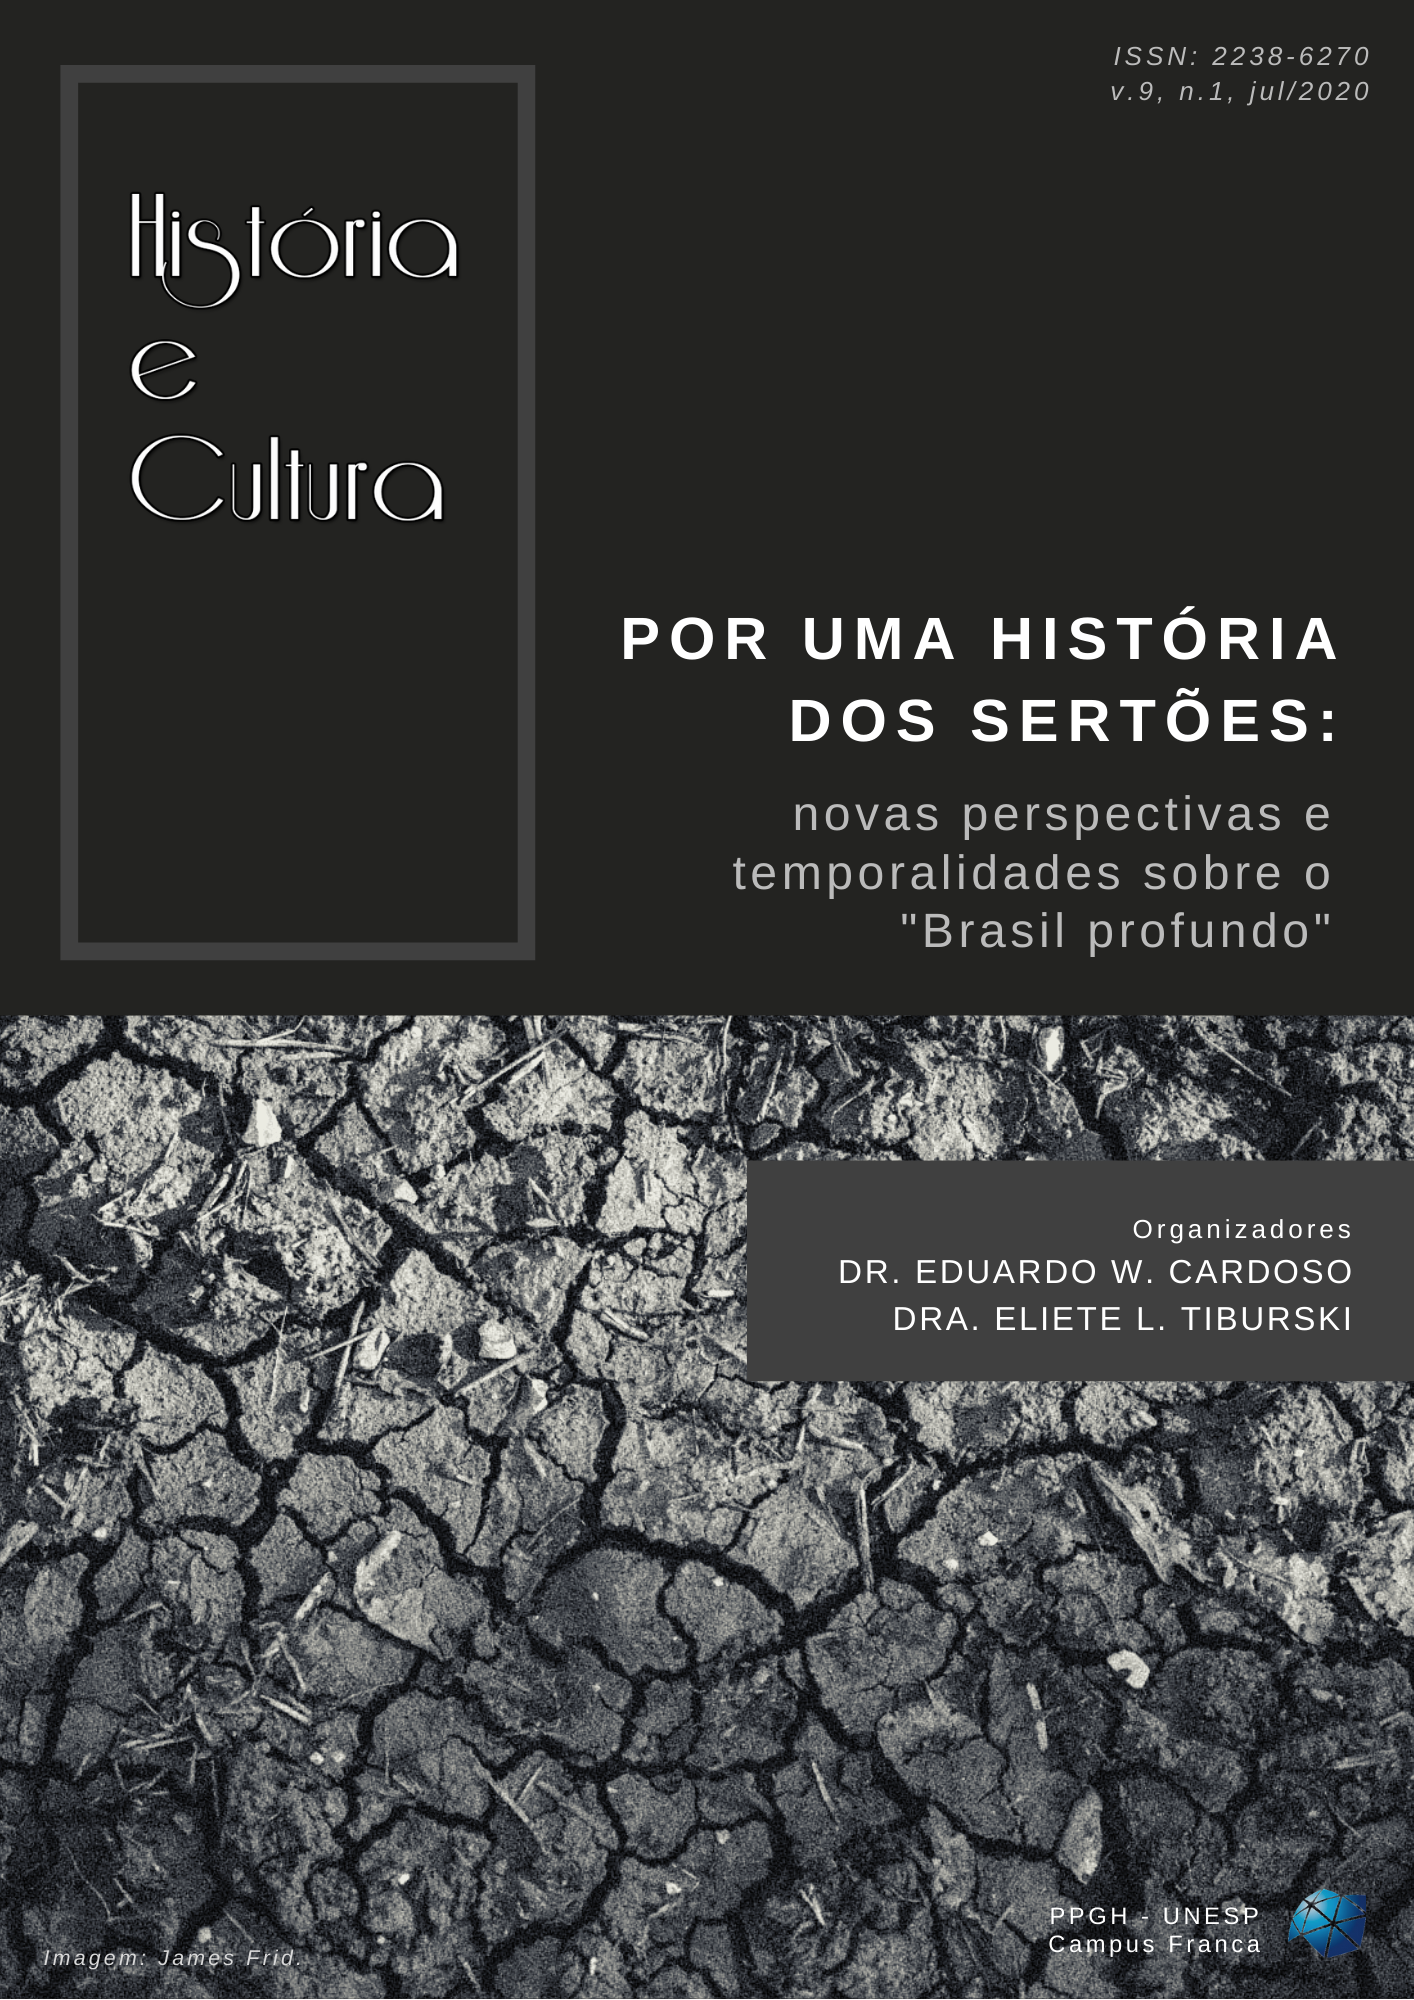 					Visualizar v. 9 n. 1 (2020): Por uma história dos sertões: novas perspectivas e temporalidades sobre o “Brasil profundo”
				